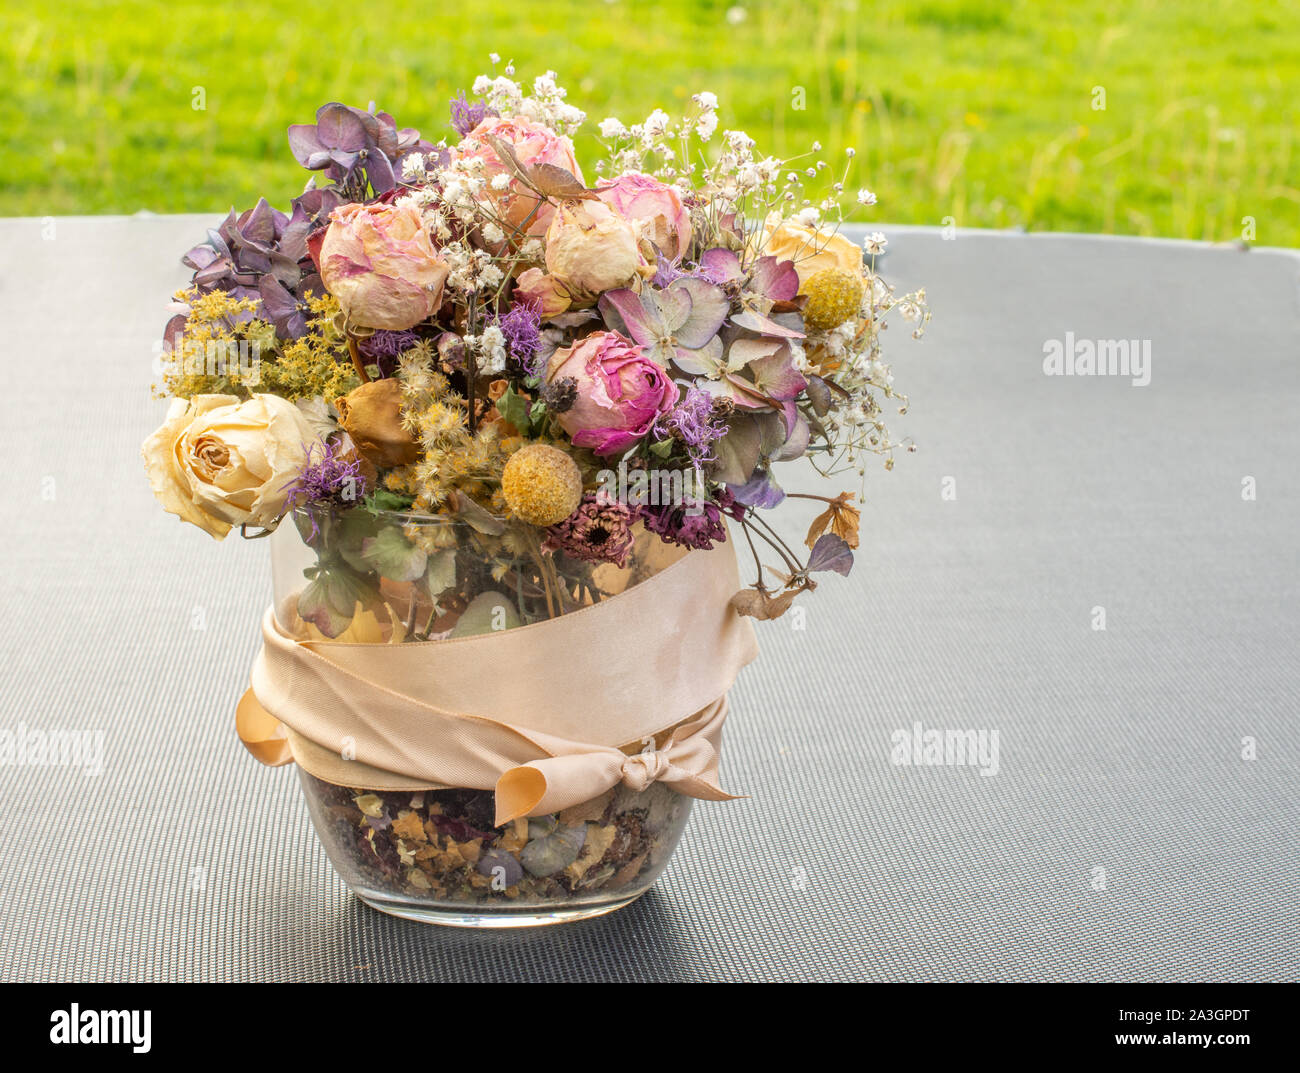 Fleurs sèches dans un vase en verre sur la table noire avec de l'herbe vert vif pour l'arrière-plan. Bouquet fait maison avec des fleurs sèches. Photo extérieur Banque D'Images